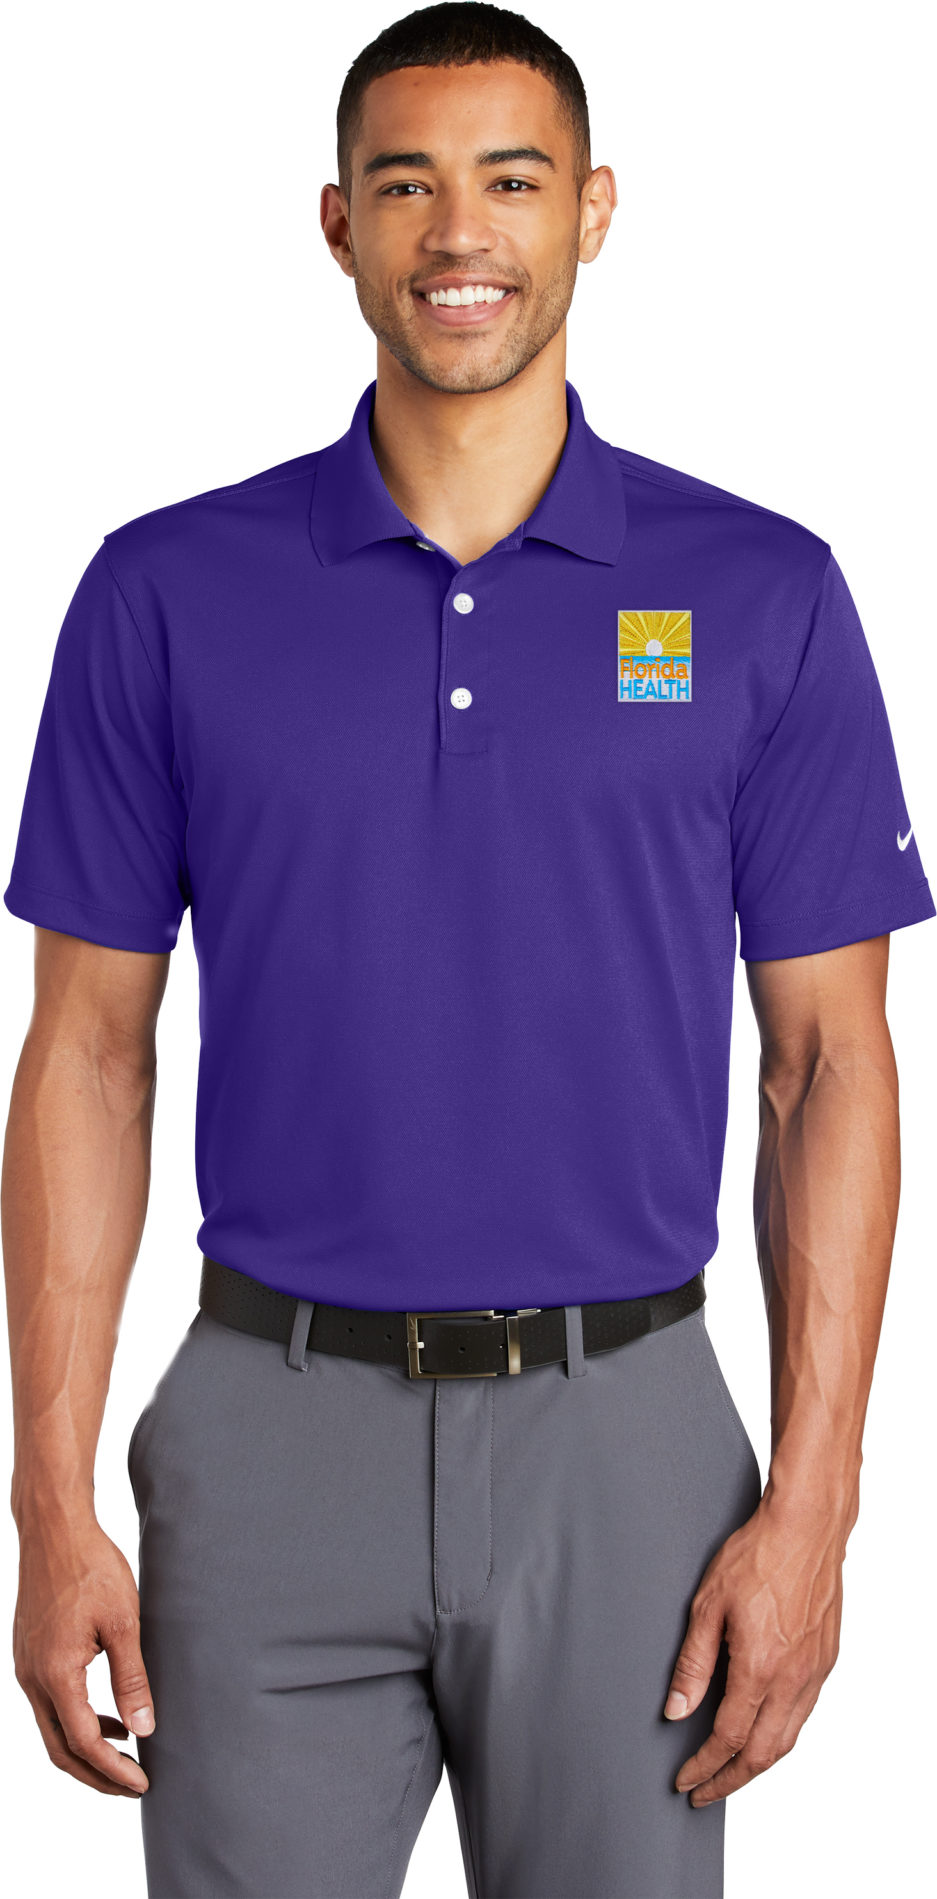 Male Model Wearing Varsity Purple Nike Polo in style 203690